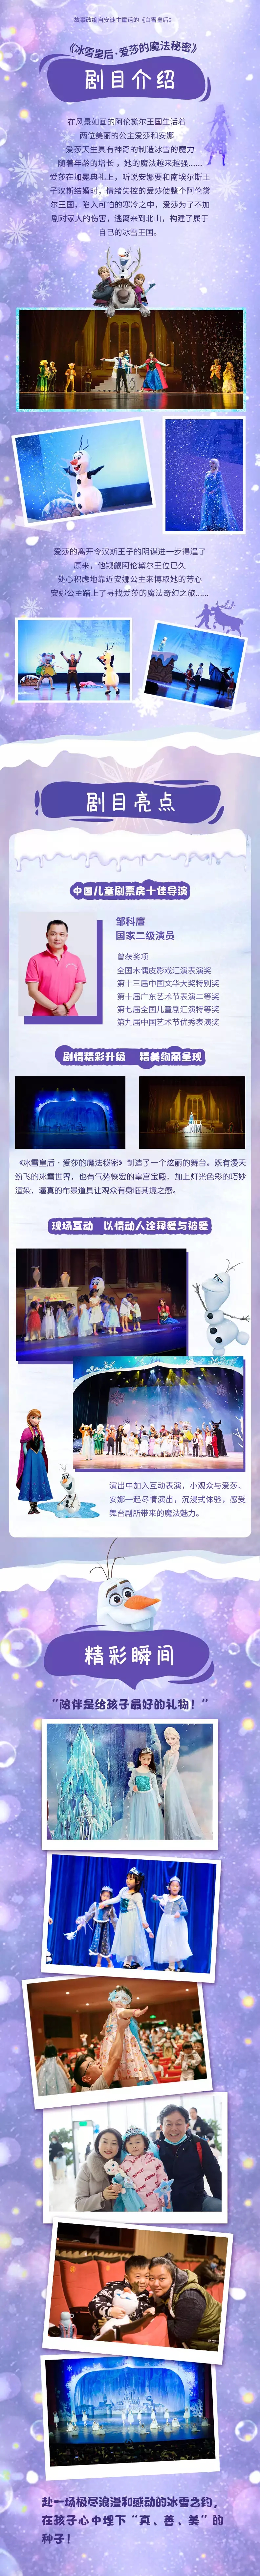 2021大型梦幻儿童亲子剧《冰雪皇后·爱莎的魔法秘密》-珠海站